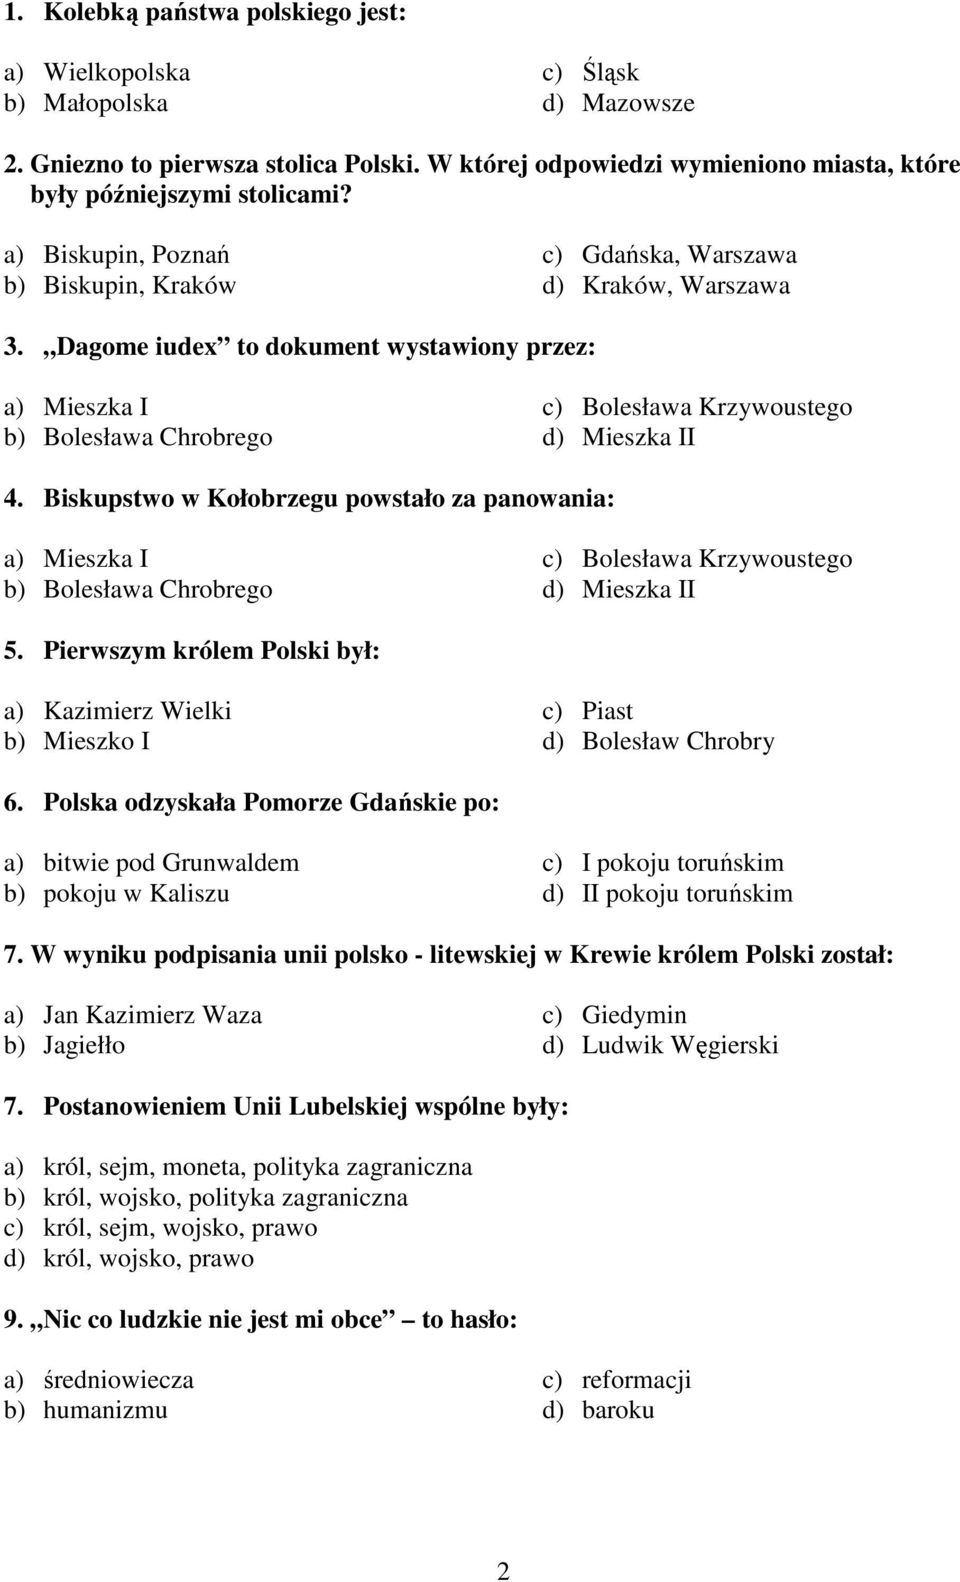 Dagome iudex to dokument wystawiony przez: a) Mieszka I b) Bolesława Chrobrego c) Bolesława Krzywoustego d) Mieszka II 4.